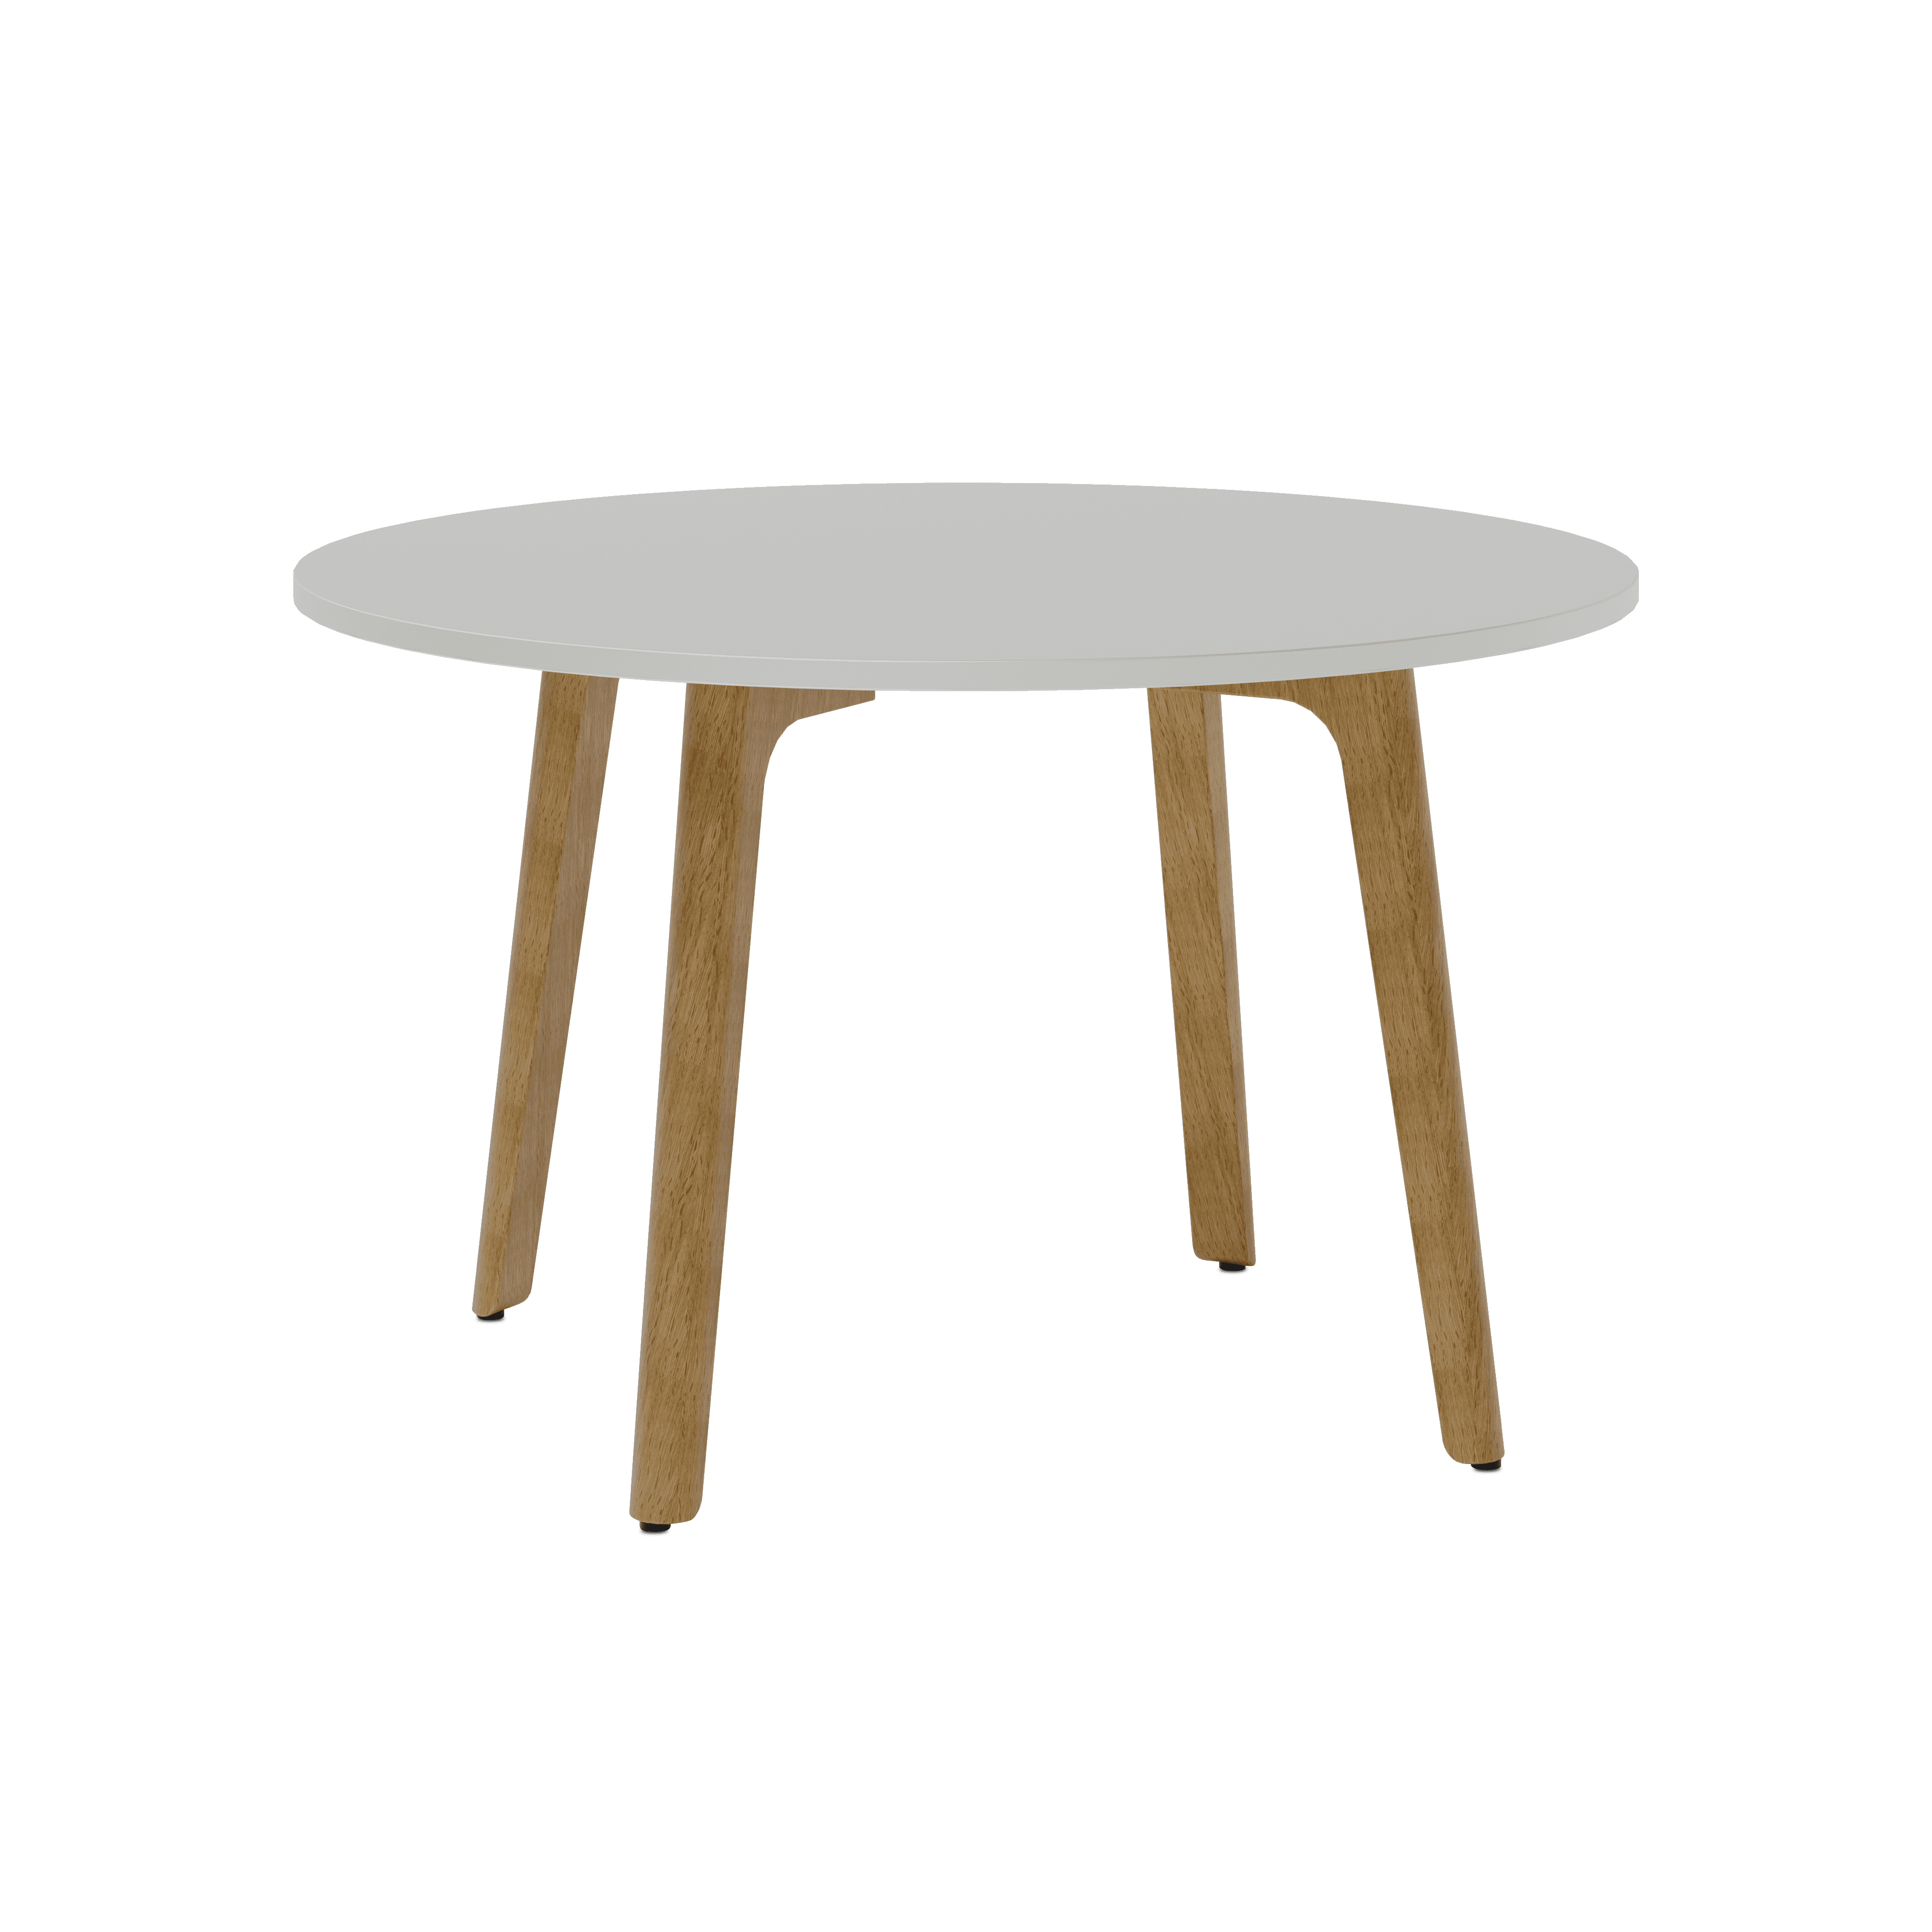 Levitate Besprechungstisch runde Tischplatte